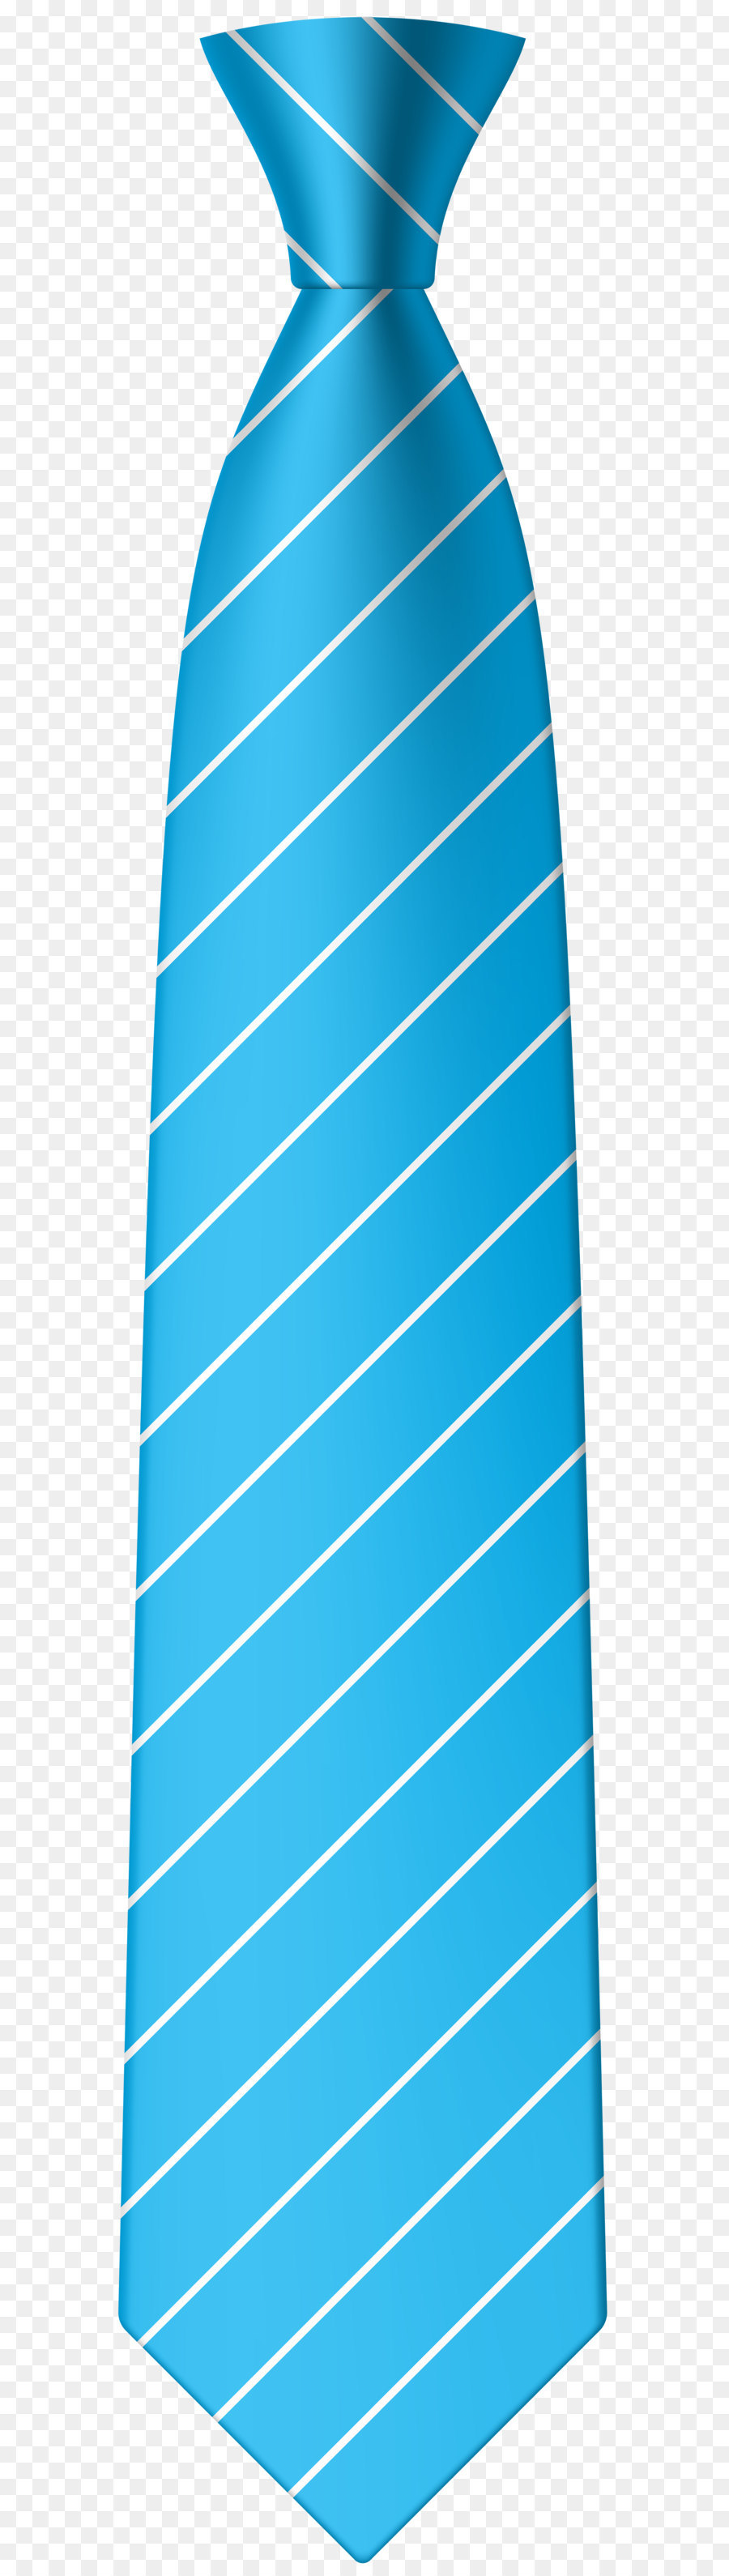 Necktie Tie Clip Bow Tie Clip Art   Blue Tie Png Clip Art Image - Blue Tie, Transparent background PNG HD thumbnail